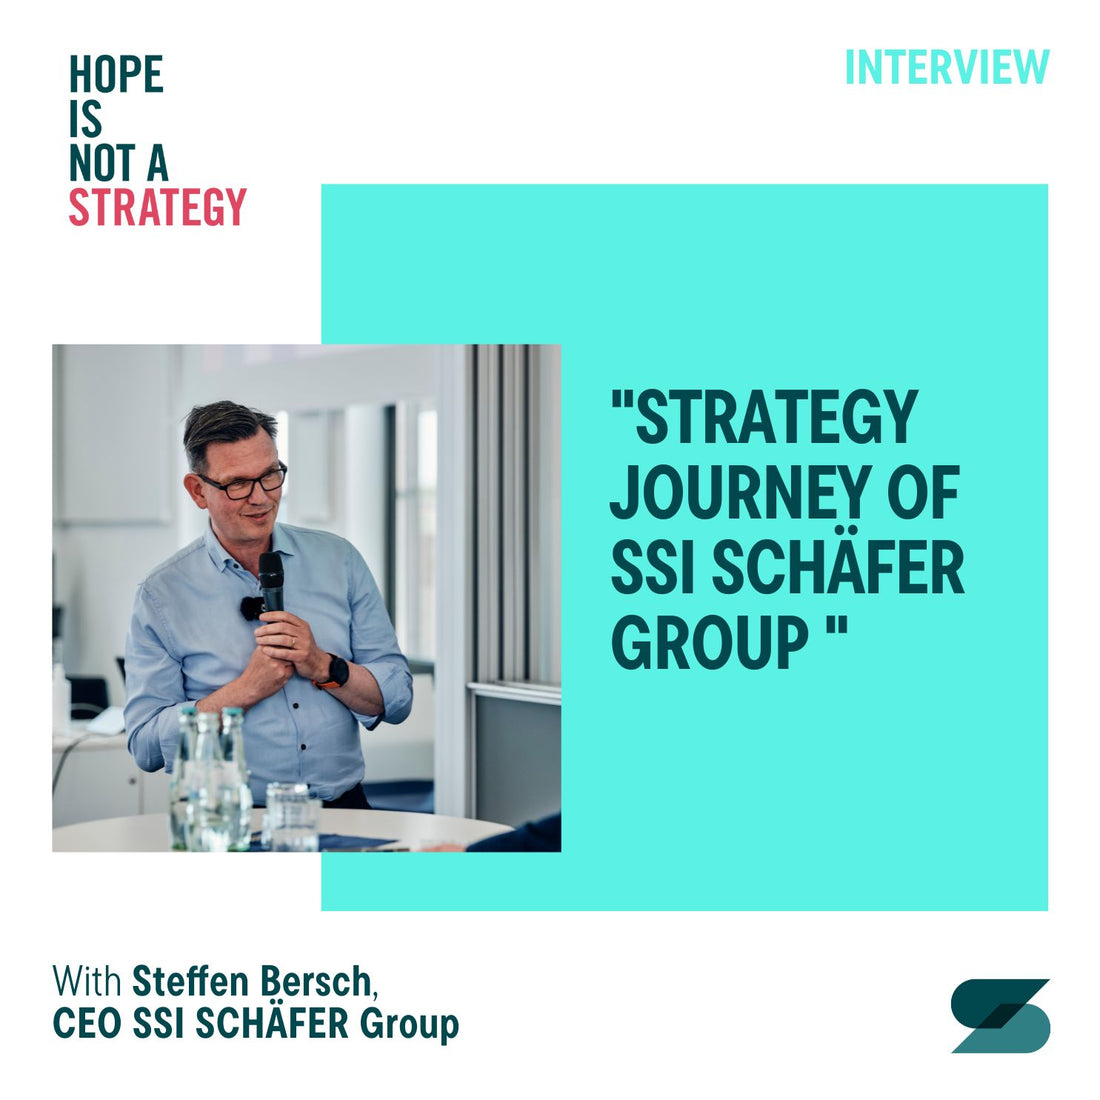 #47 Steffen Bersch: The strategic journey of the SSI SCHÄFER Group